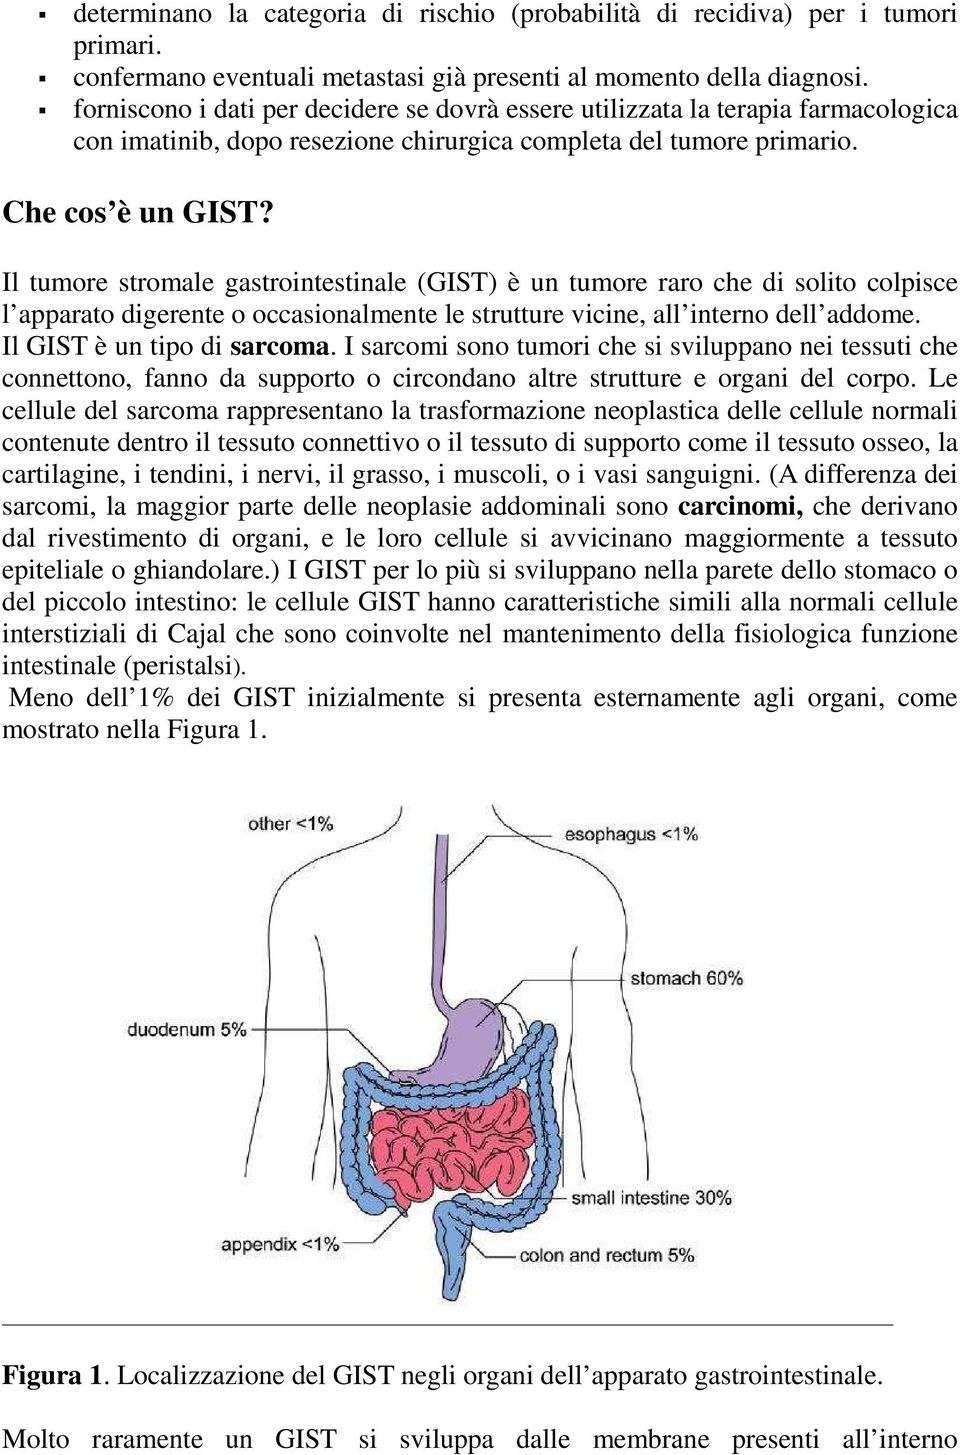 Il tumore stromale gastrointestinale (GIST) è un tumore raro che di solito colpisce l apparato digerente o occasionalmente le strutture vicine, all interno dell addome. Il GIST è un tipo di sarcoma.